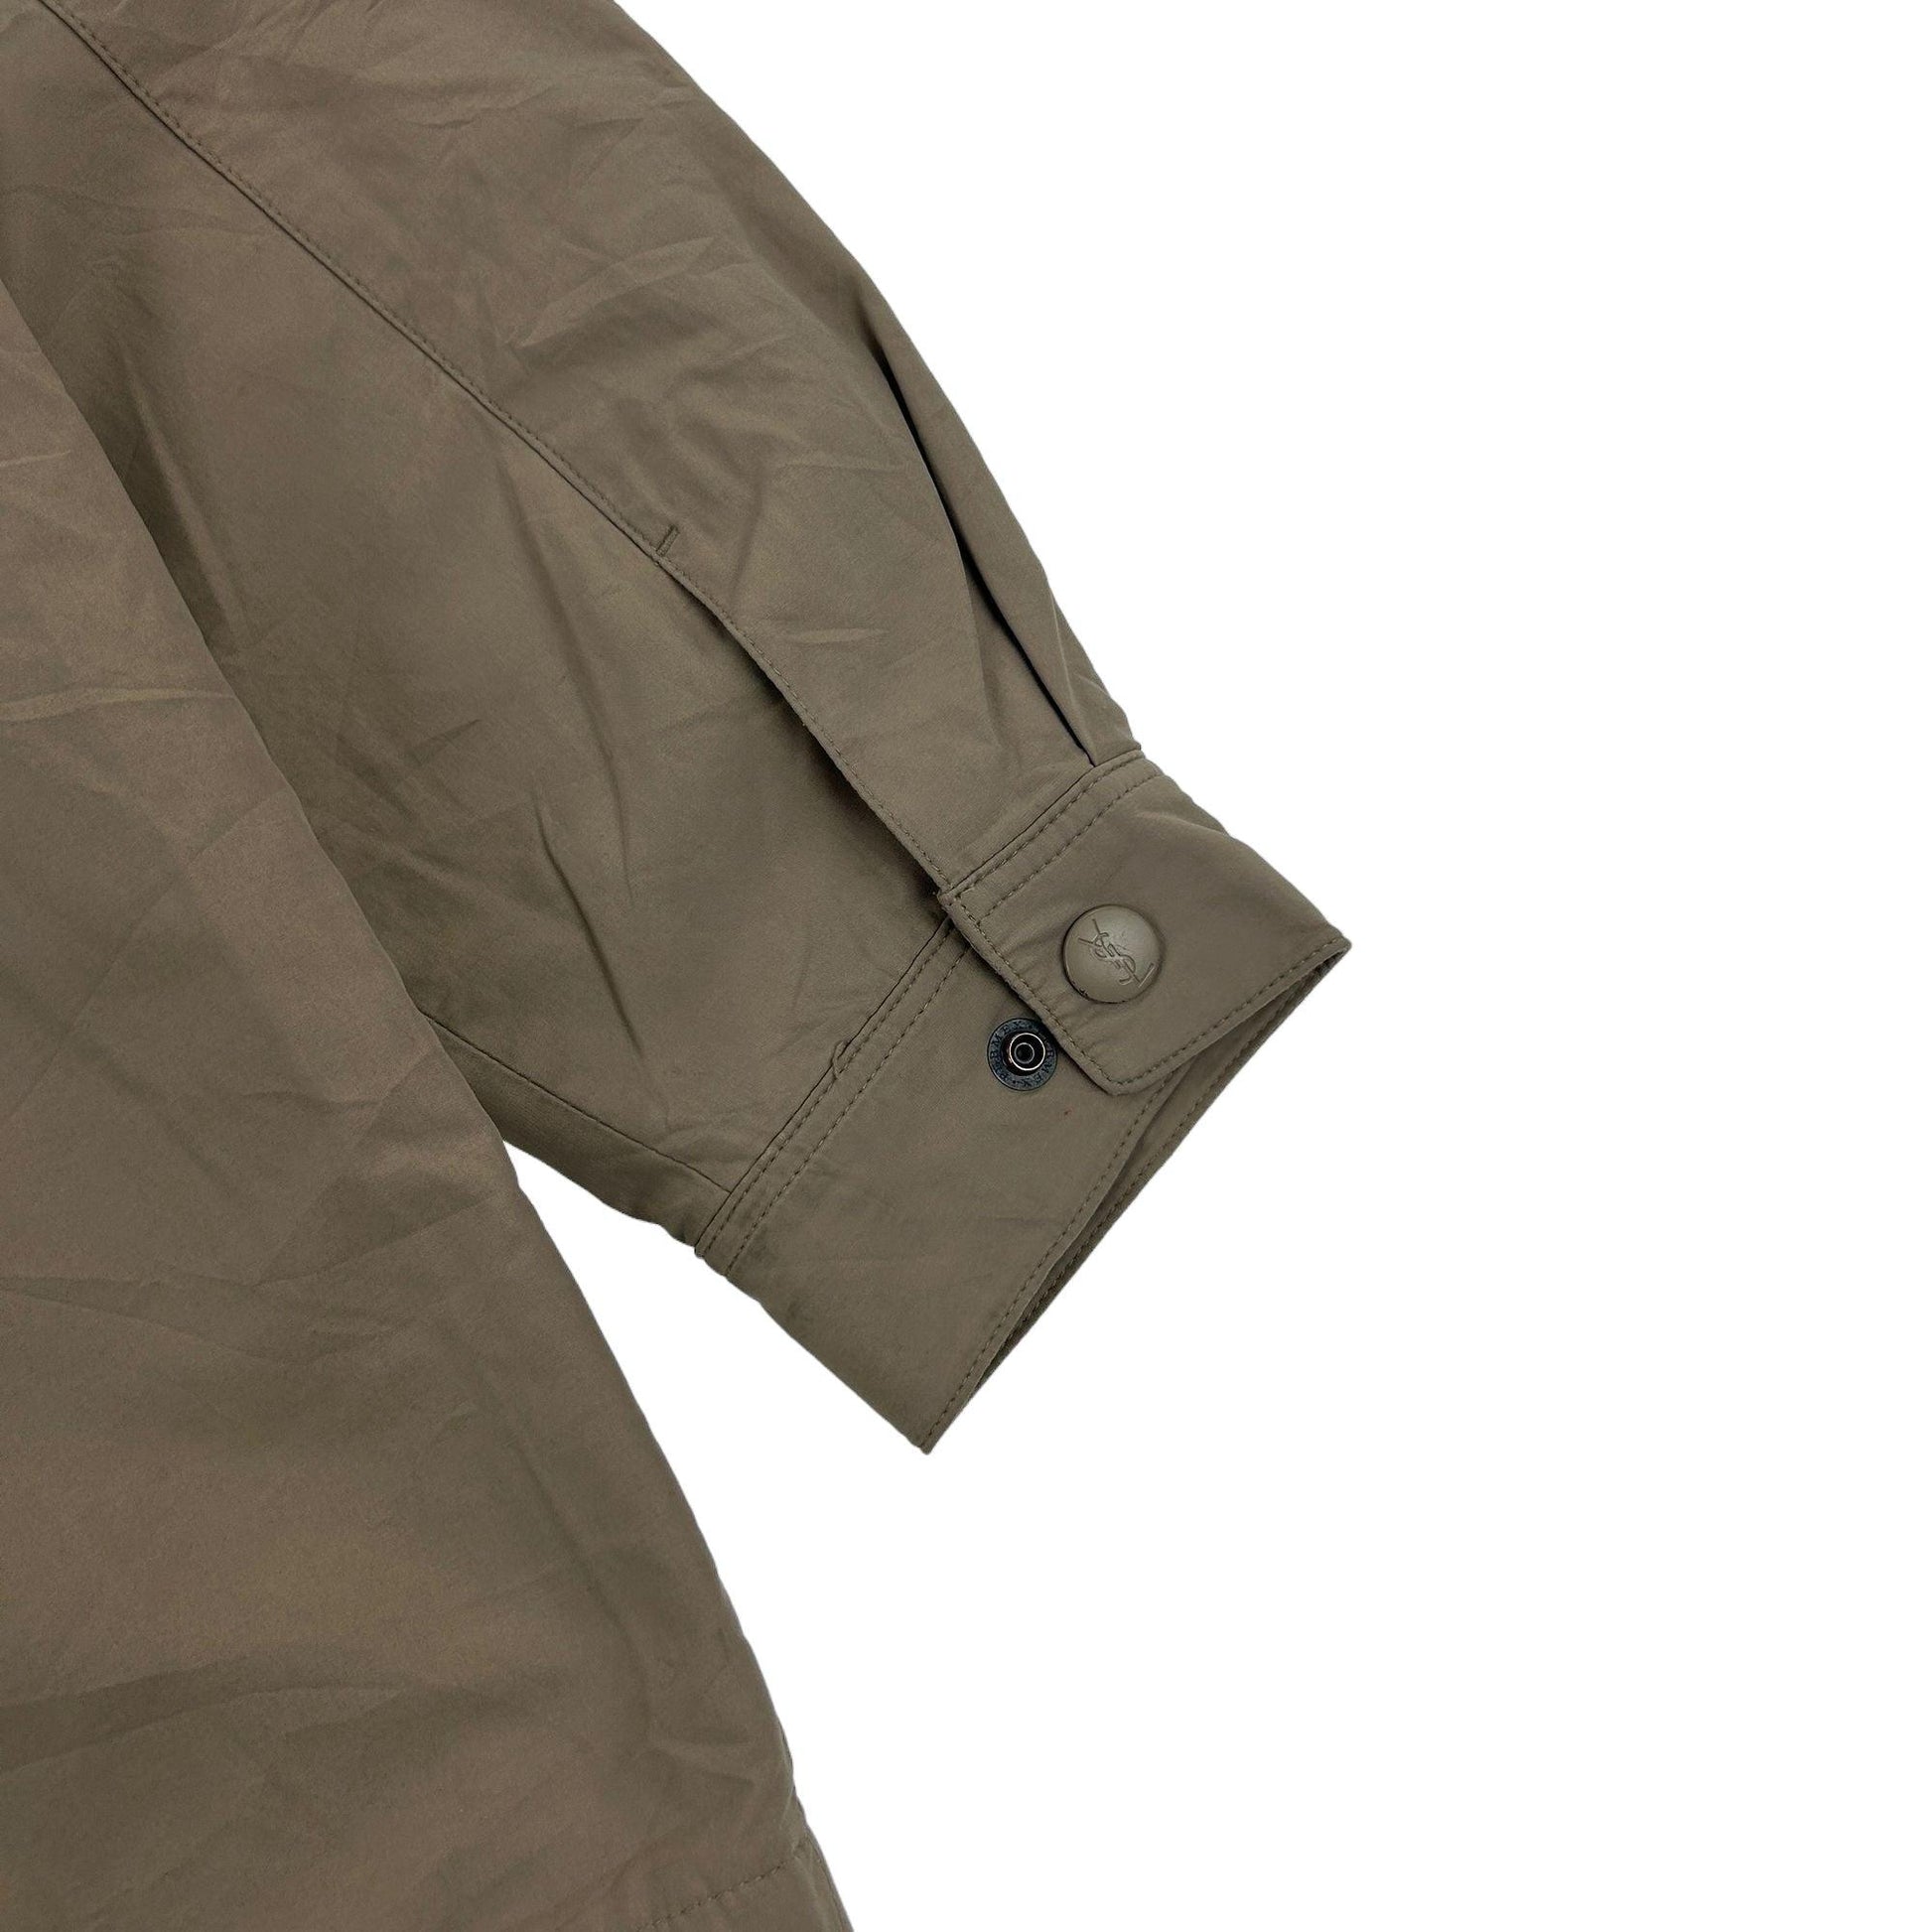 Vintage Yves Saint Laurent Jacket Size XL - Known Source